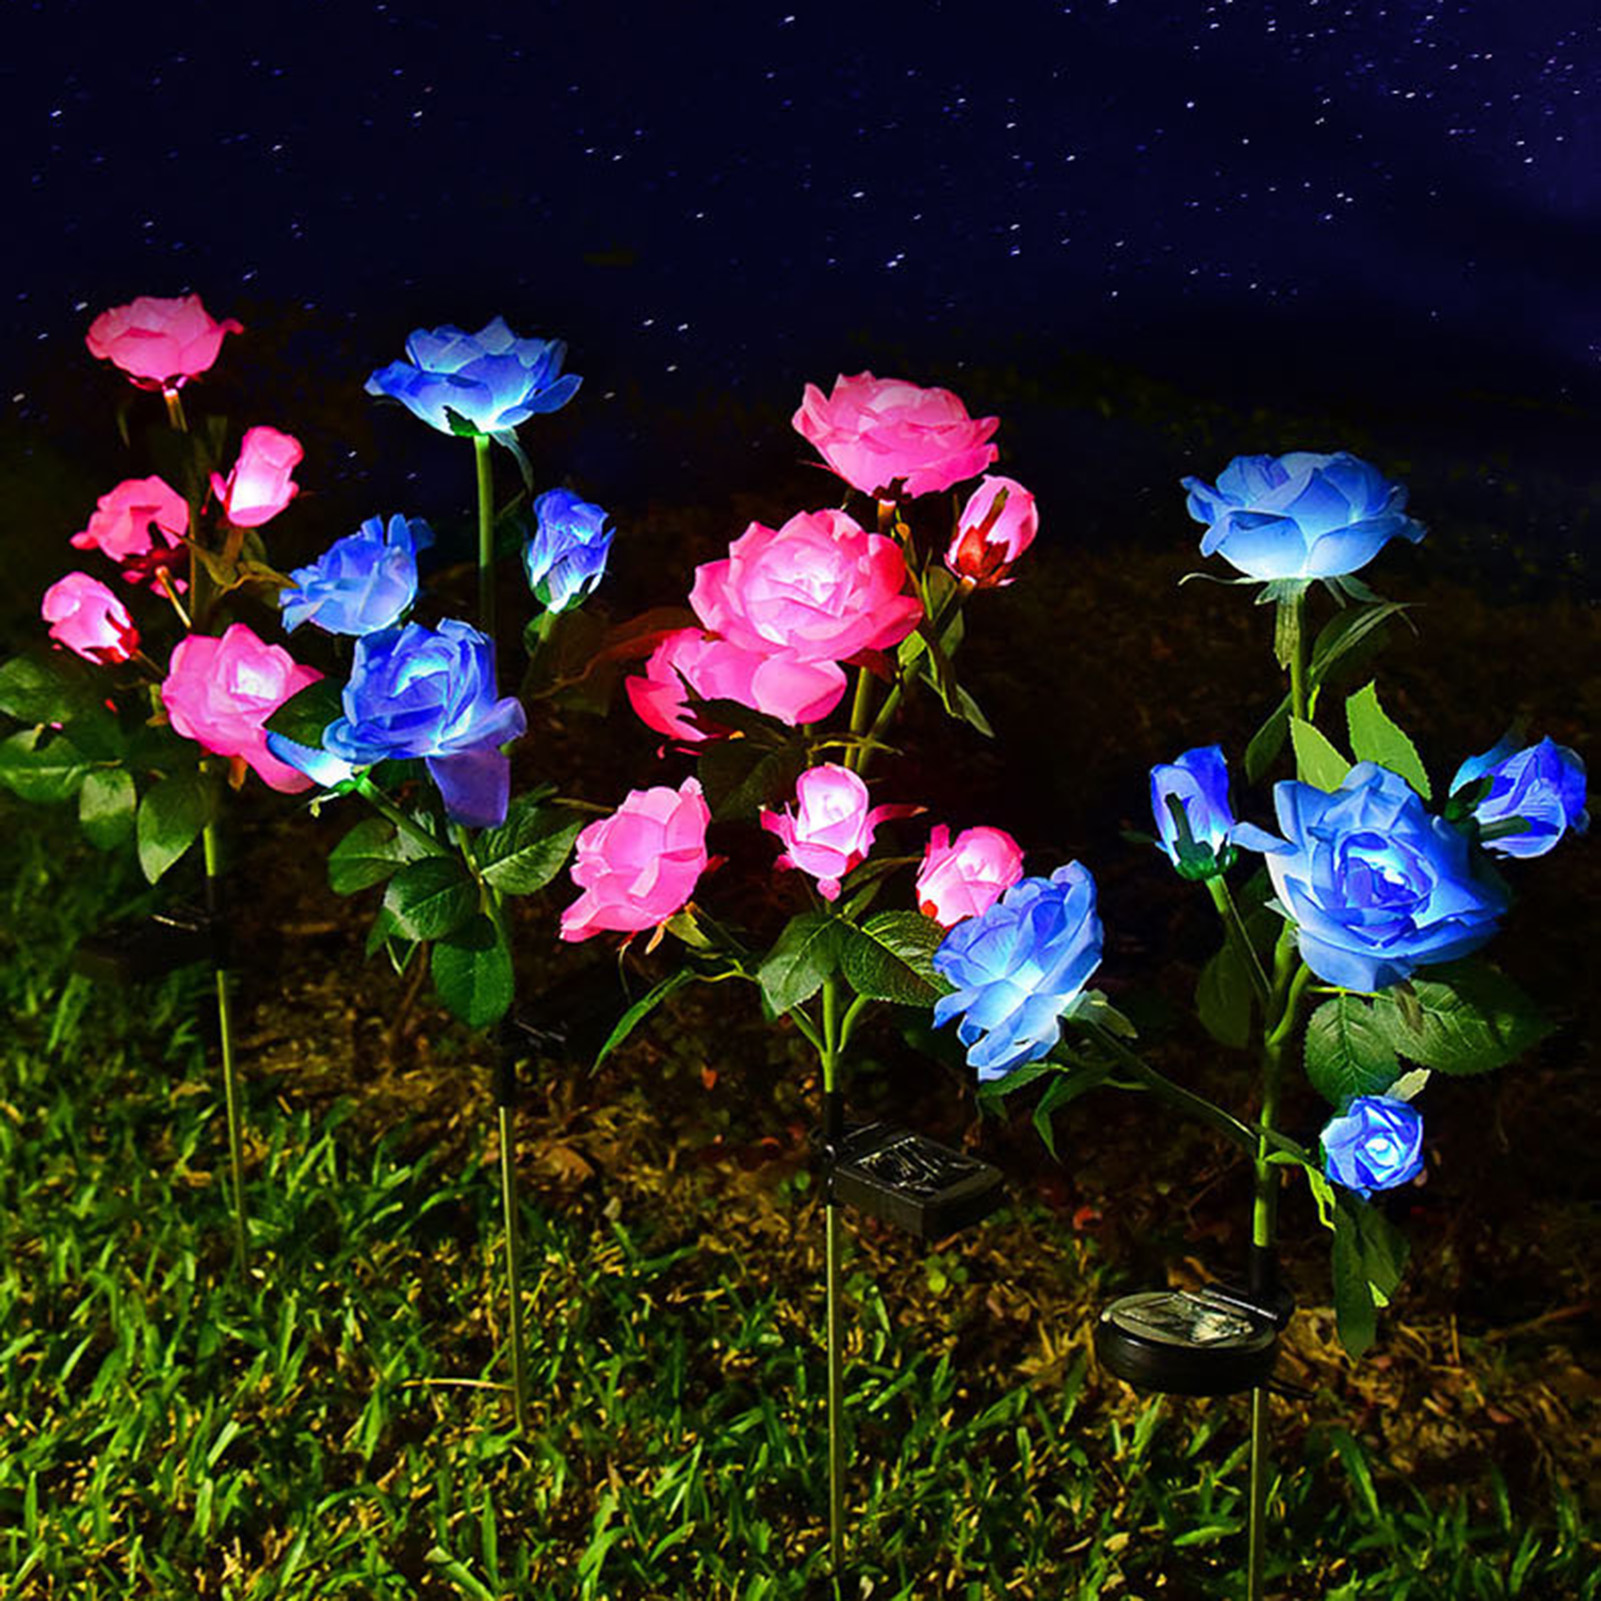 LED 태양 시뮬레이션 장미 꽃 빛 홈 장식 꽃 조명 정원 장식 잔디 램프 방수 풍경 장미 빛